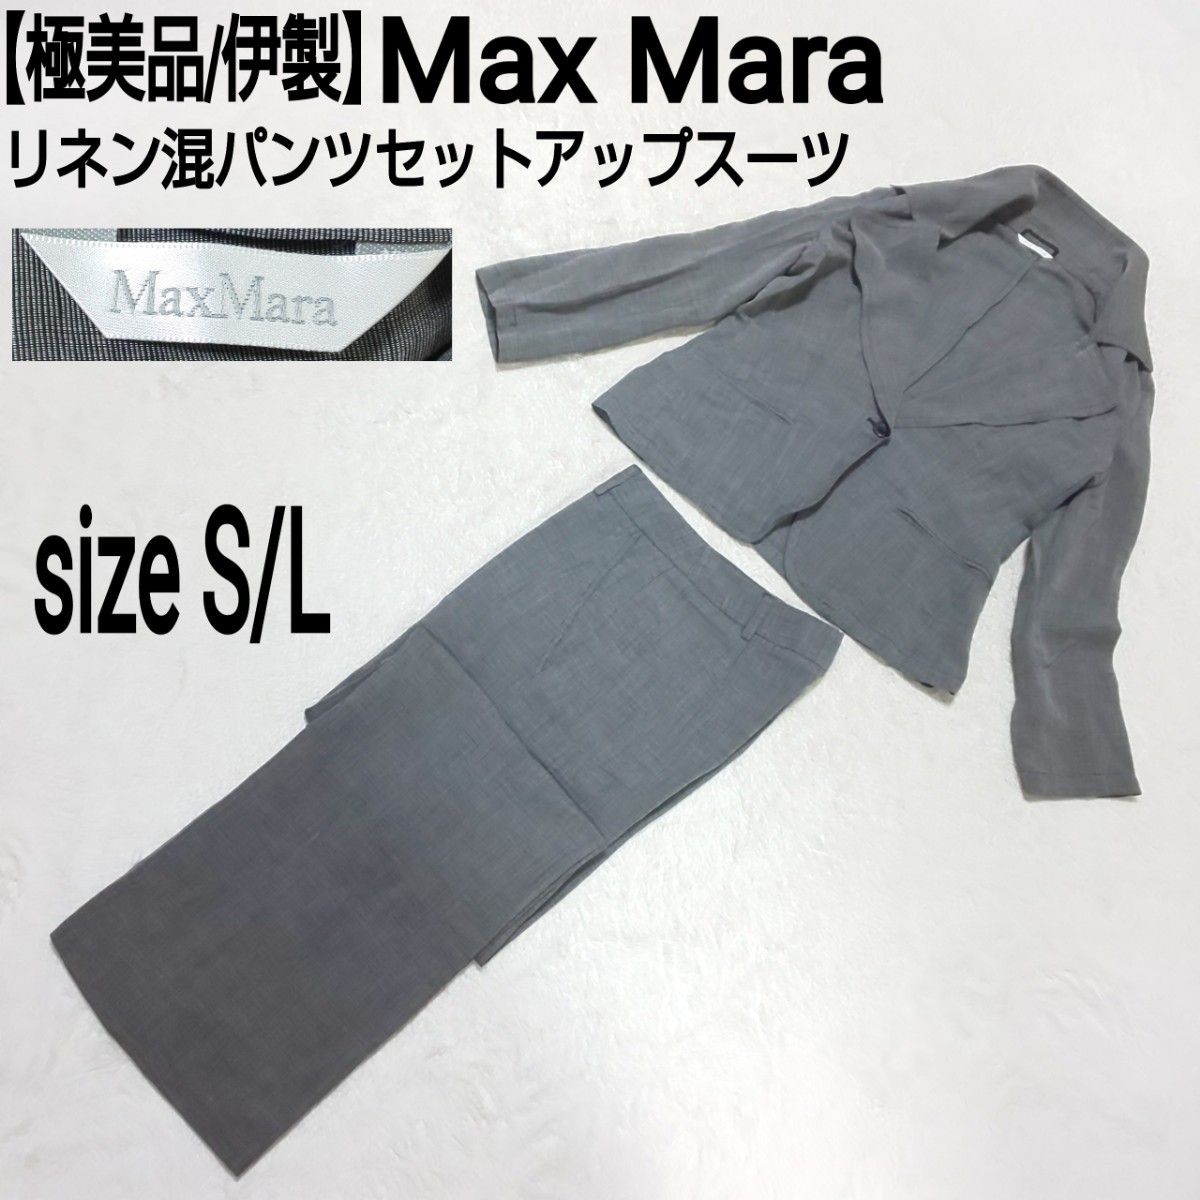 極美品/伊製 Max Mara マックスマーラ シングルボタン リネン混パンツセットアップスーツ 1Bテーラードジャケット グレー S/L レディース